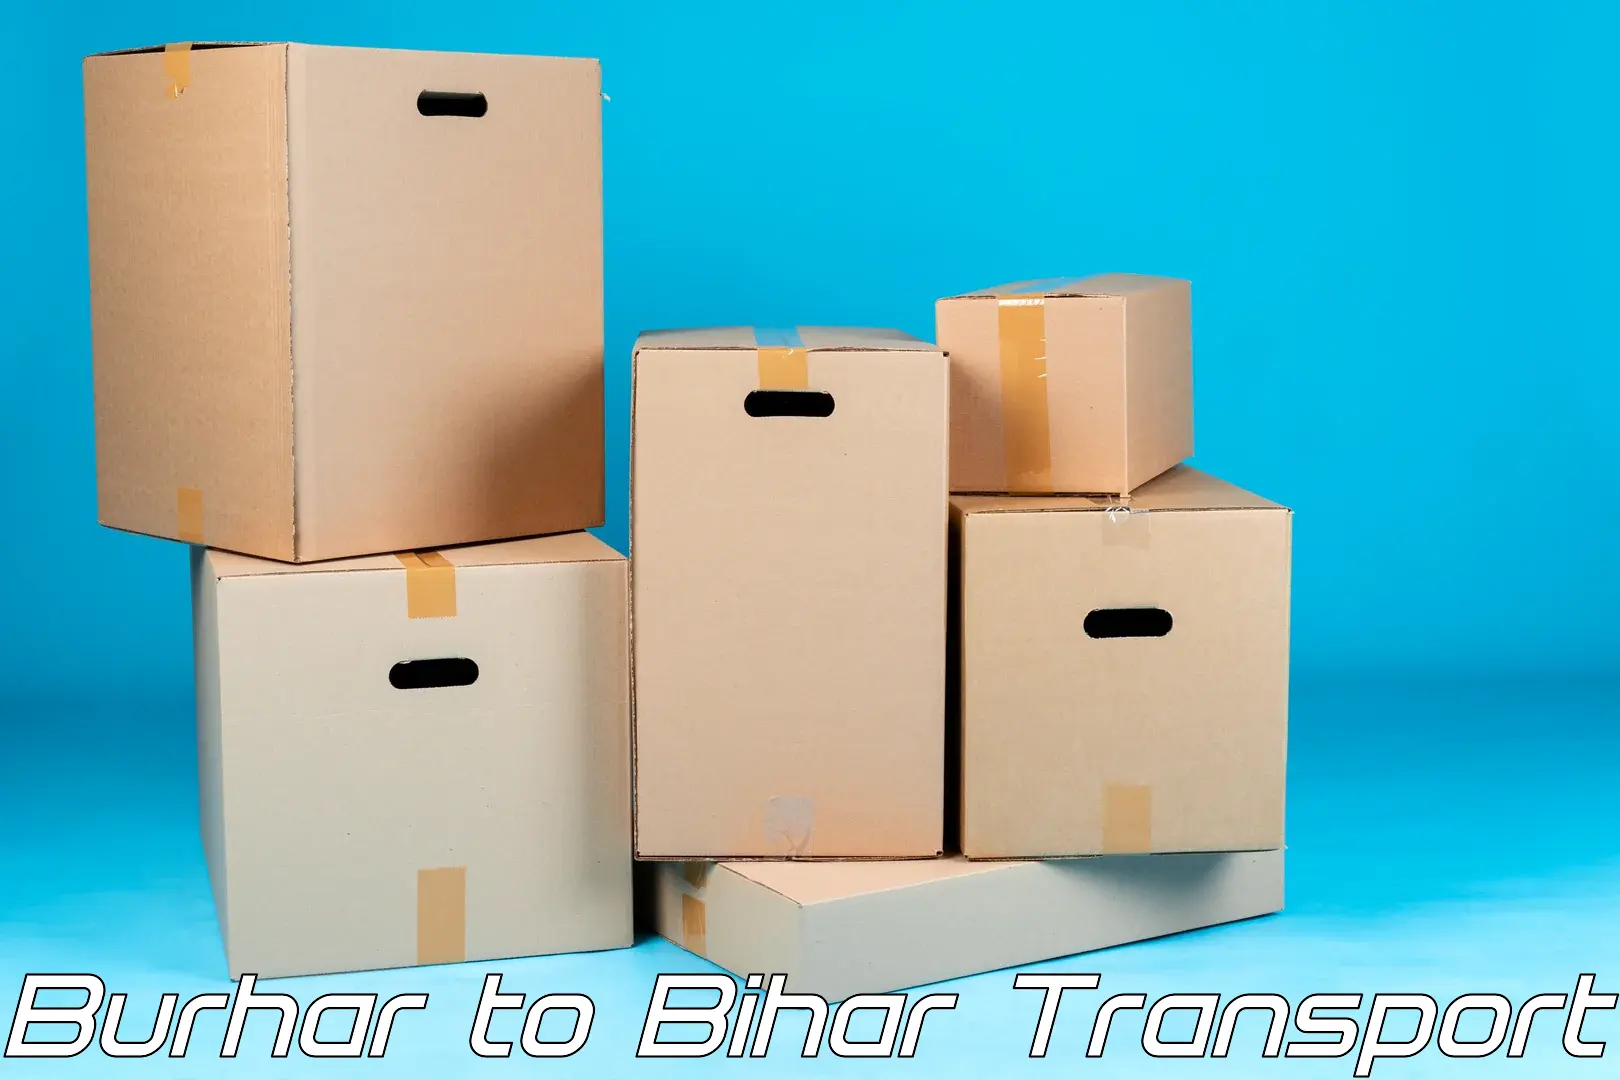 Shipping services Burhar to Banka